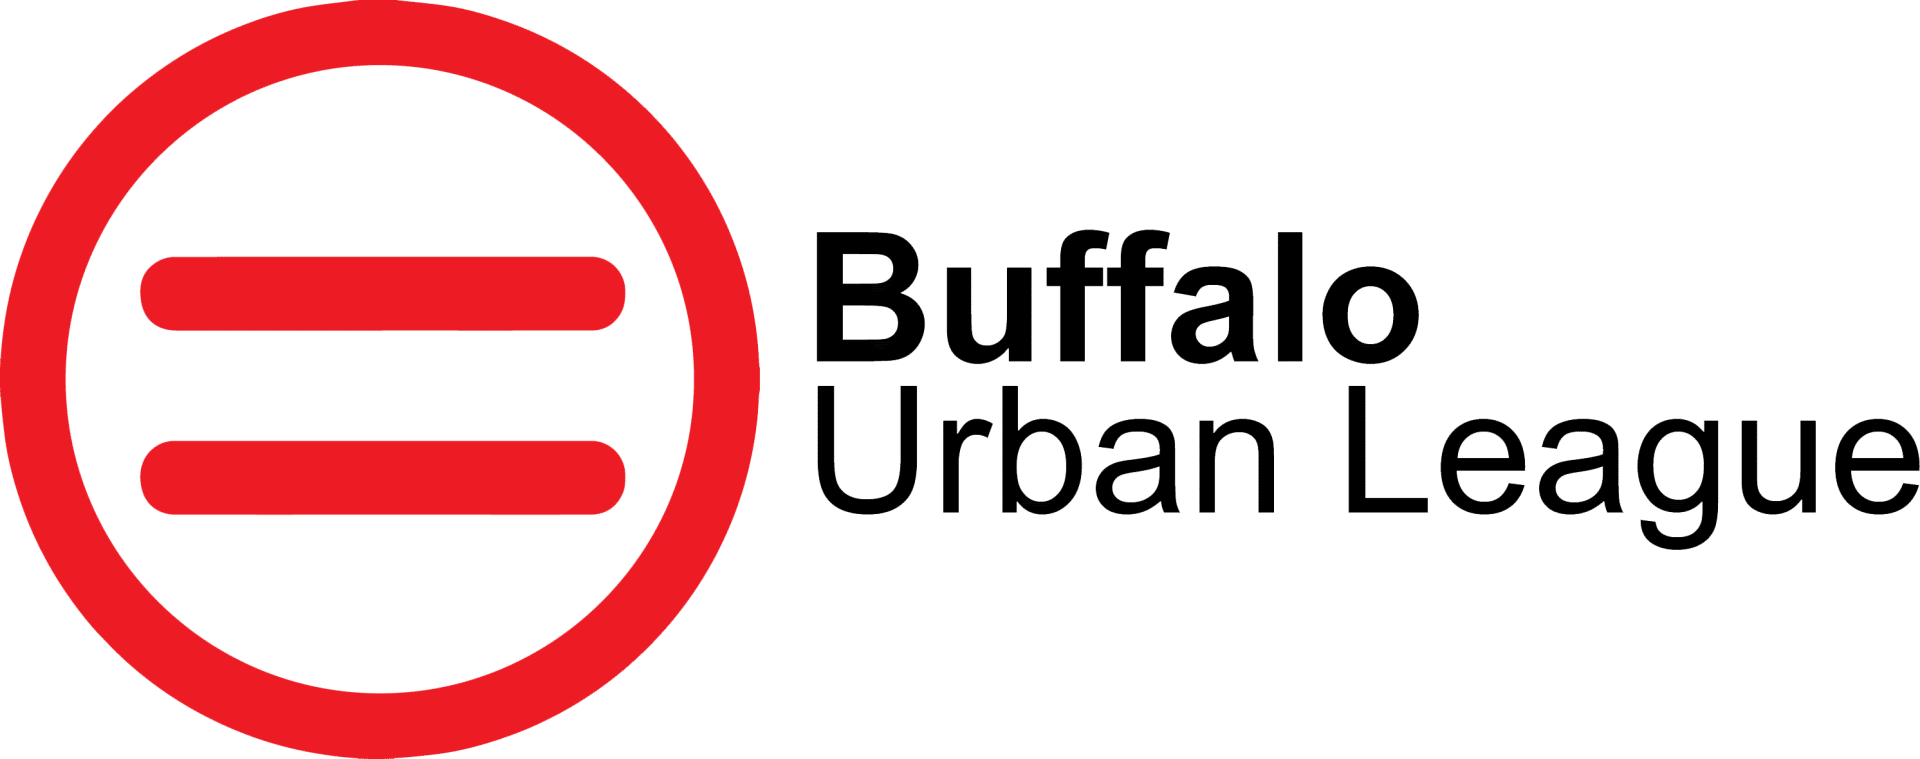 Building Relationships - Buffalo Urban League